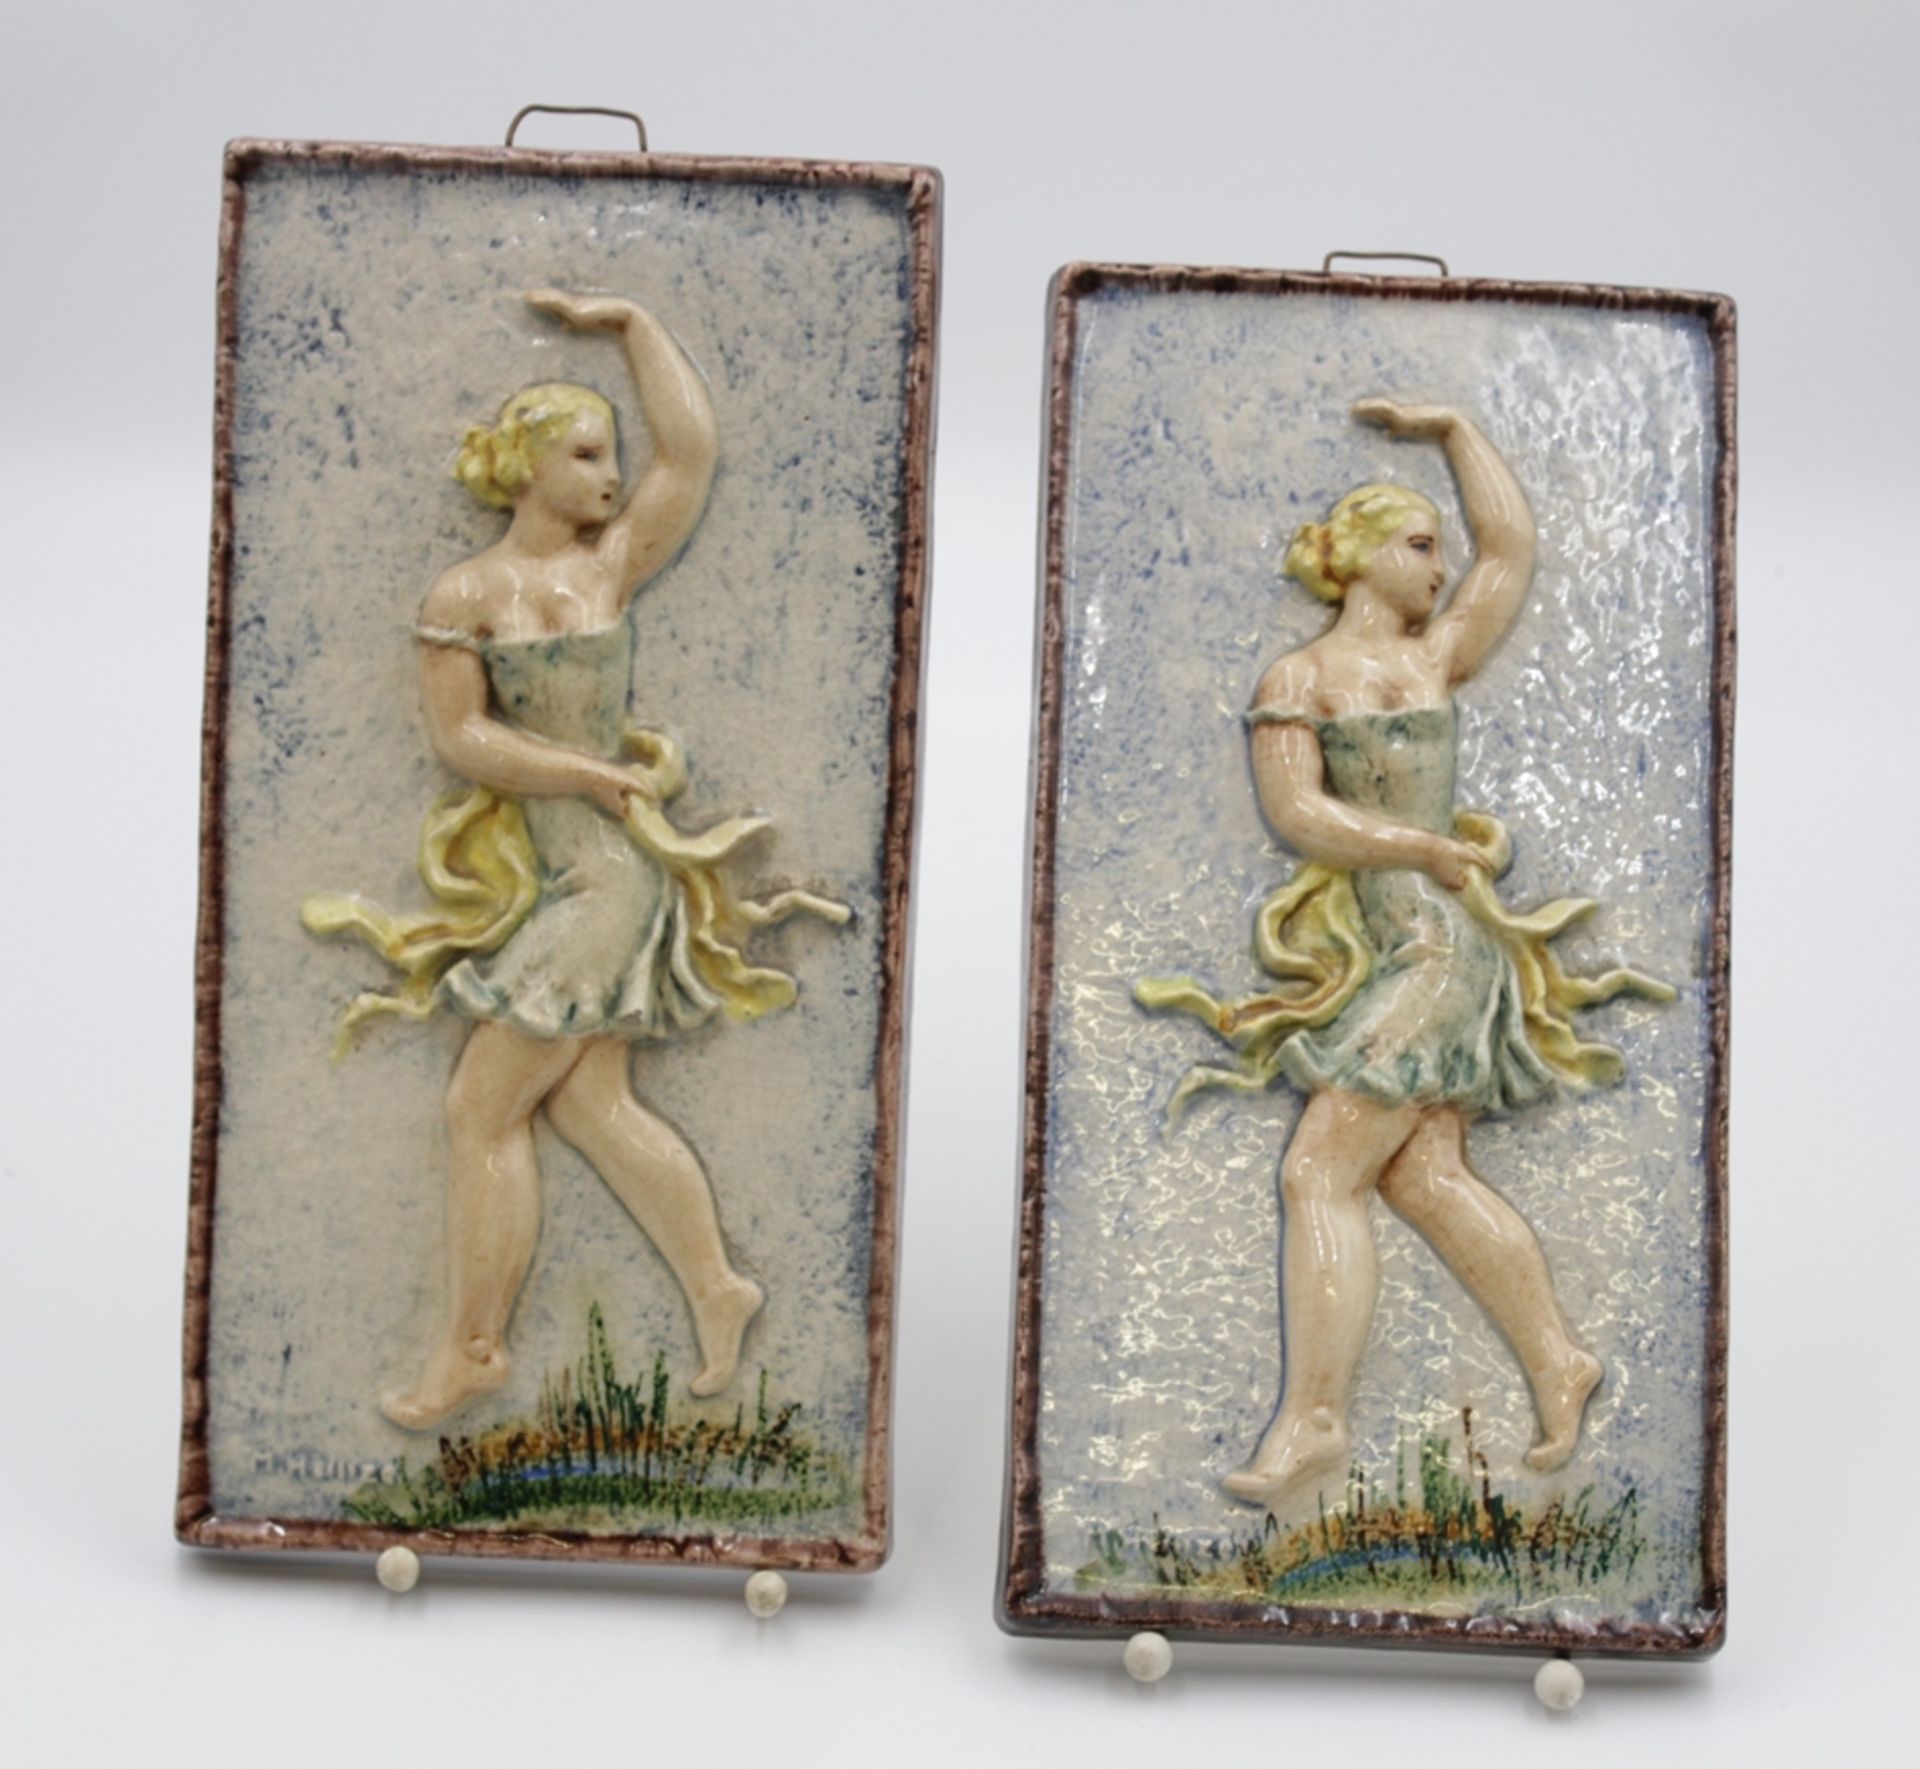 Paar Wandkacheln, Tänzerinnen, signiert "M.Heinze", 1x verso Abplatzer, 29,5 x 15cm.